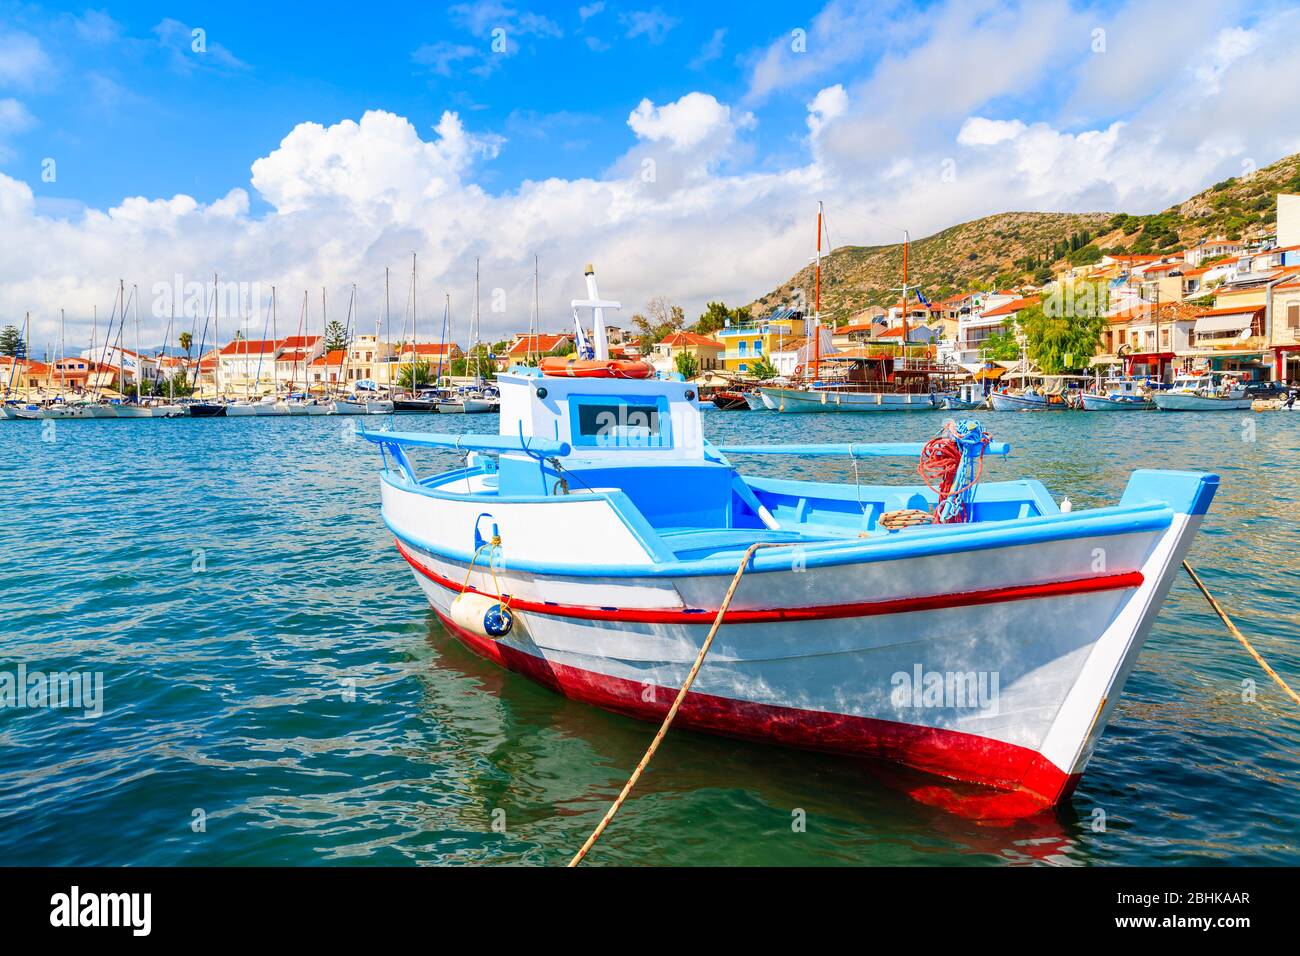 Típico barco de pesca de colores en el puerto de Pythagorion, isla de Samos, Mar Egeo, Grecia Foto de stock